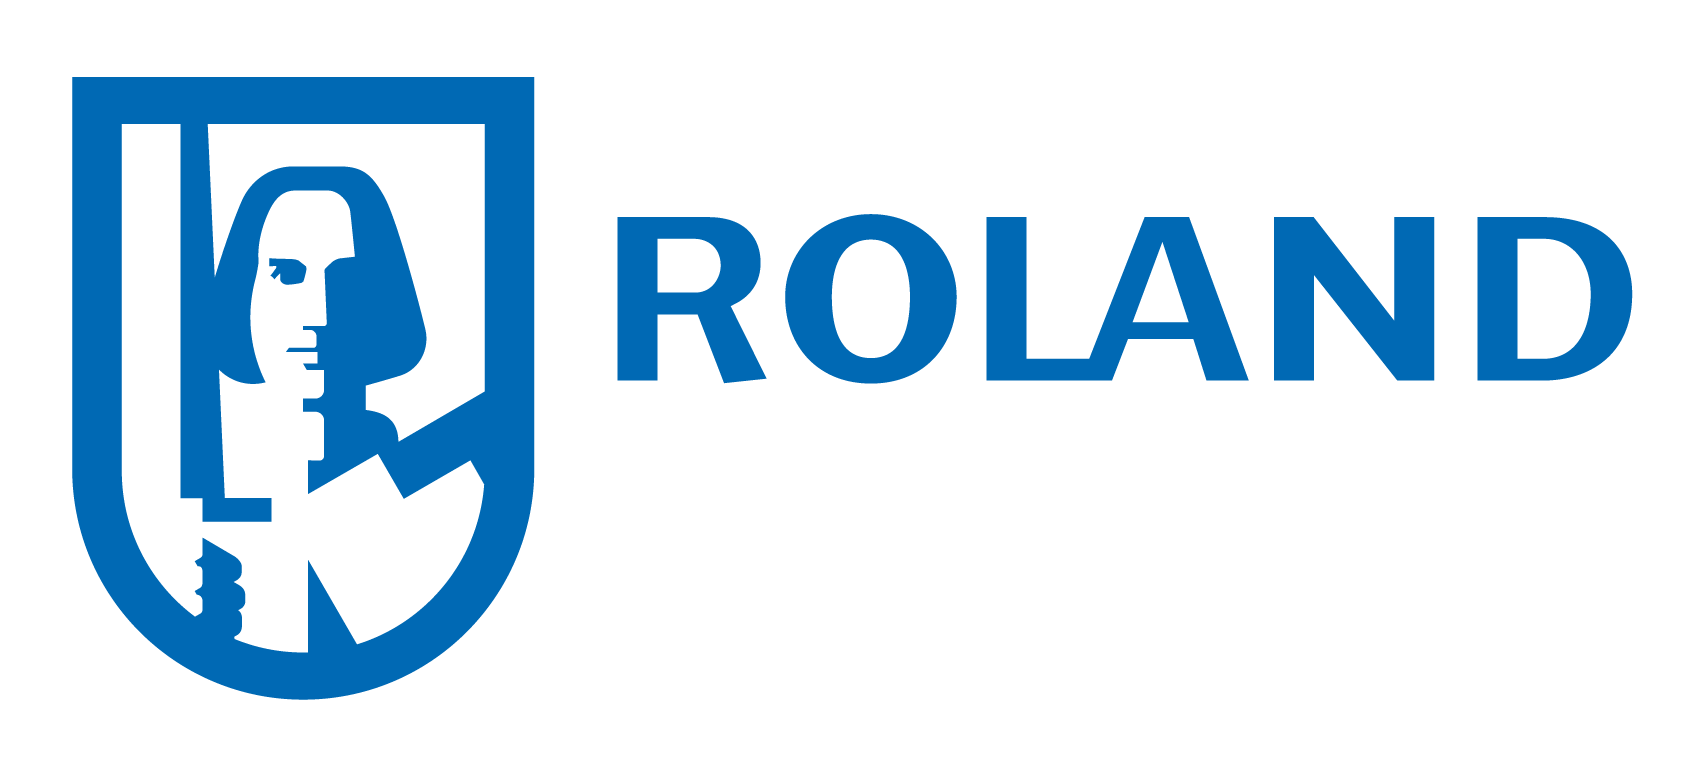 ROLAND Rechtsschutz-Versicherungs-AG